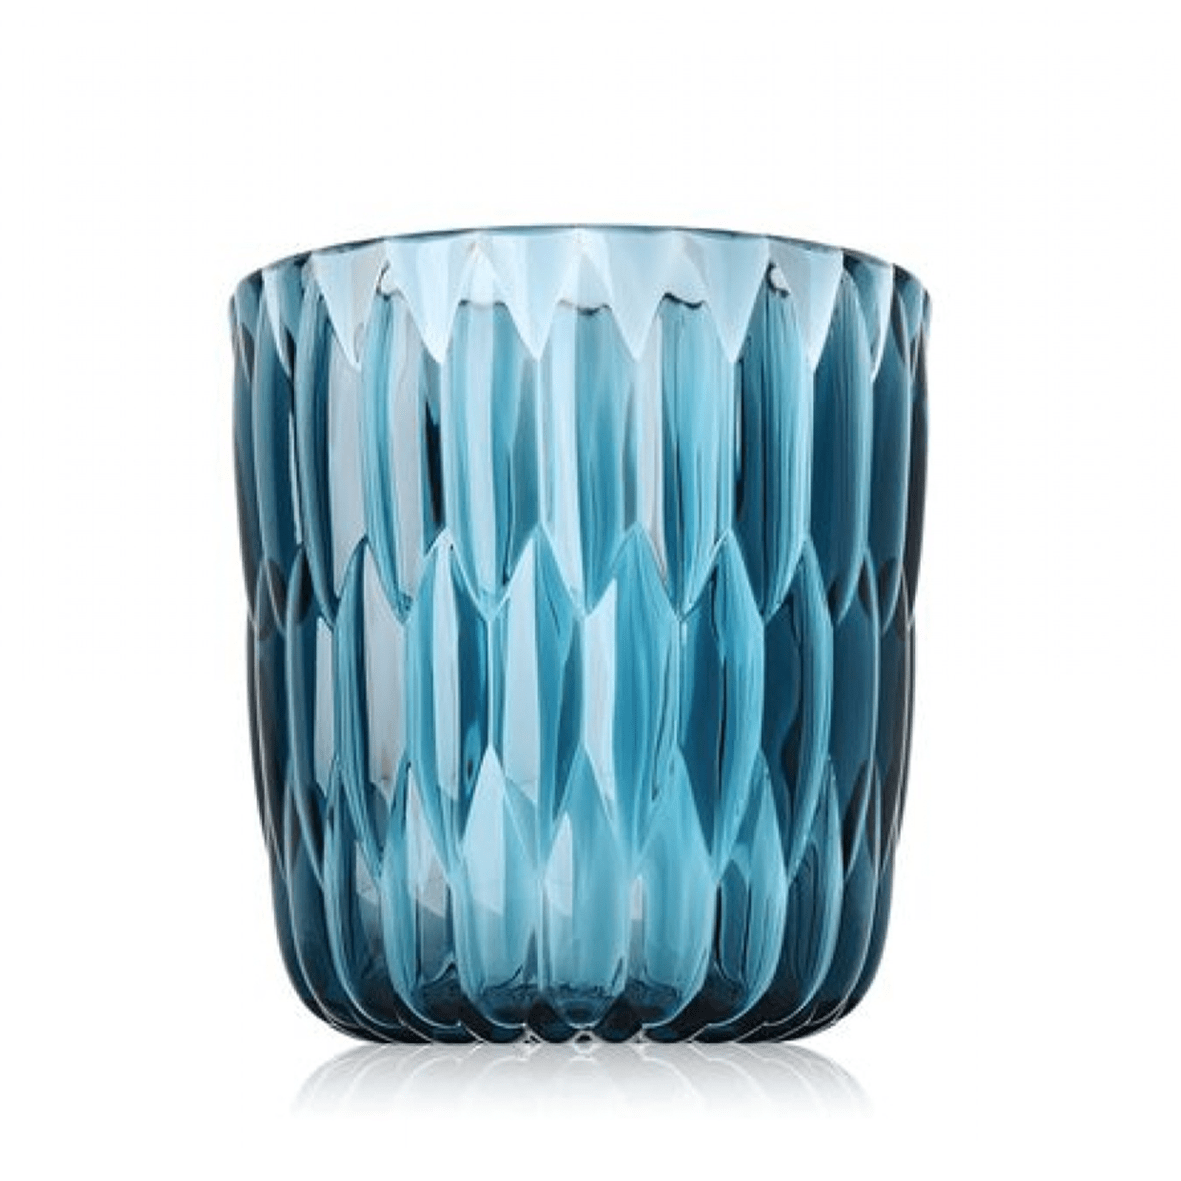 A blue transparent vase by Kartell.